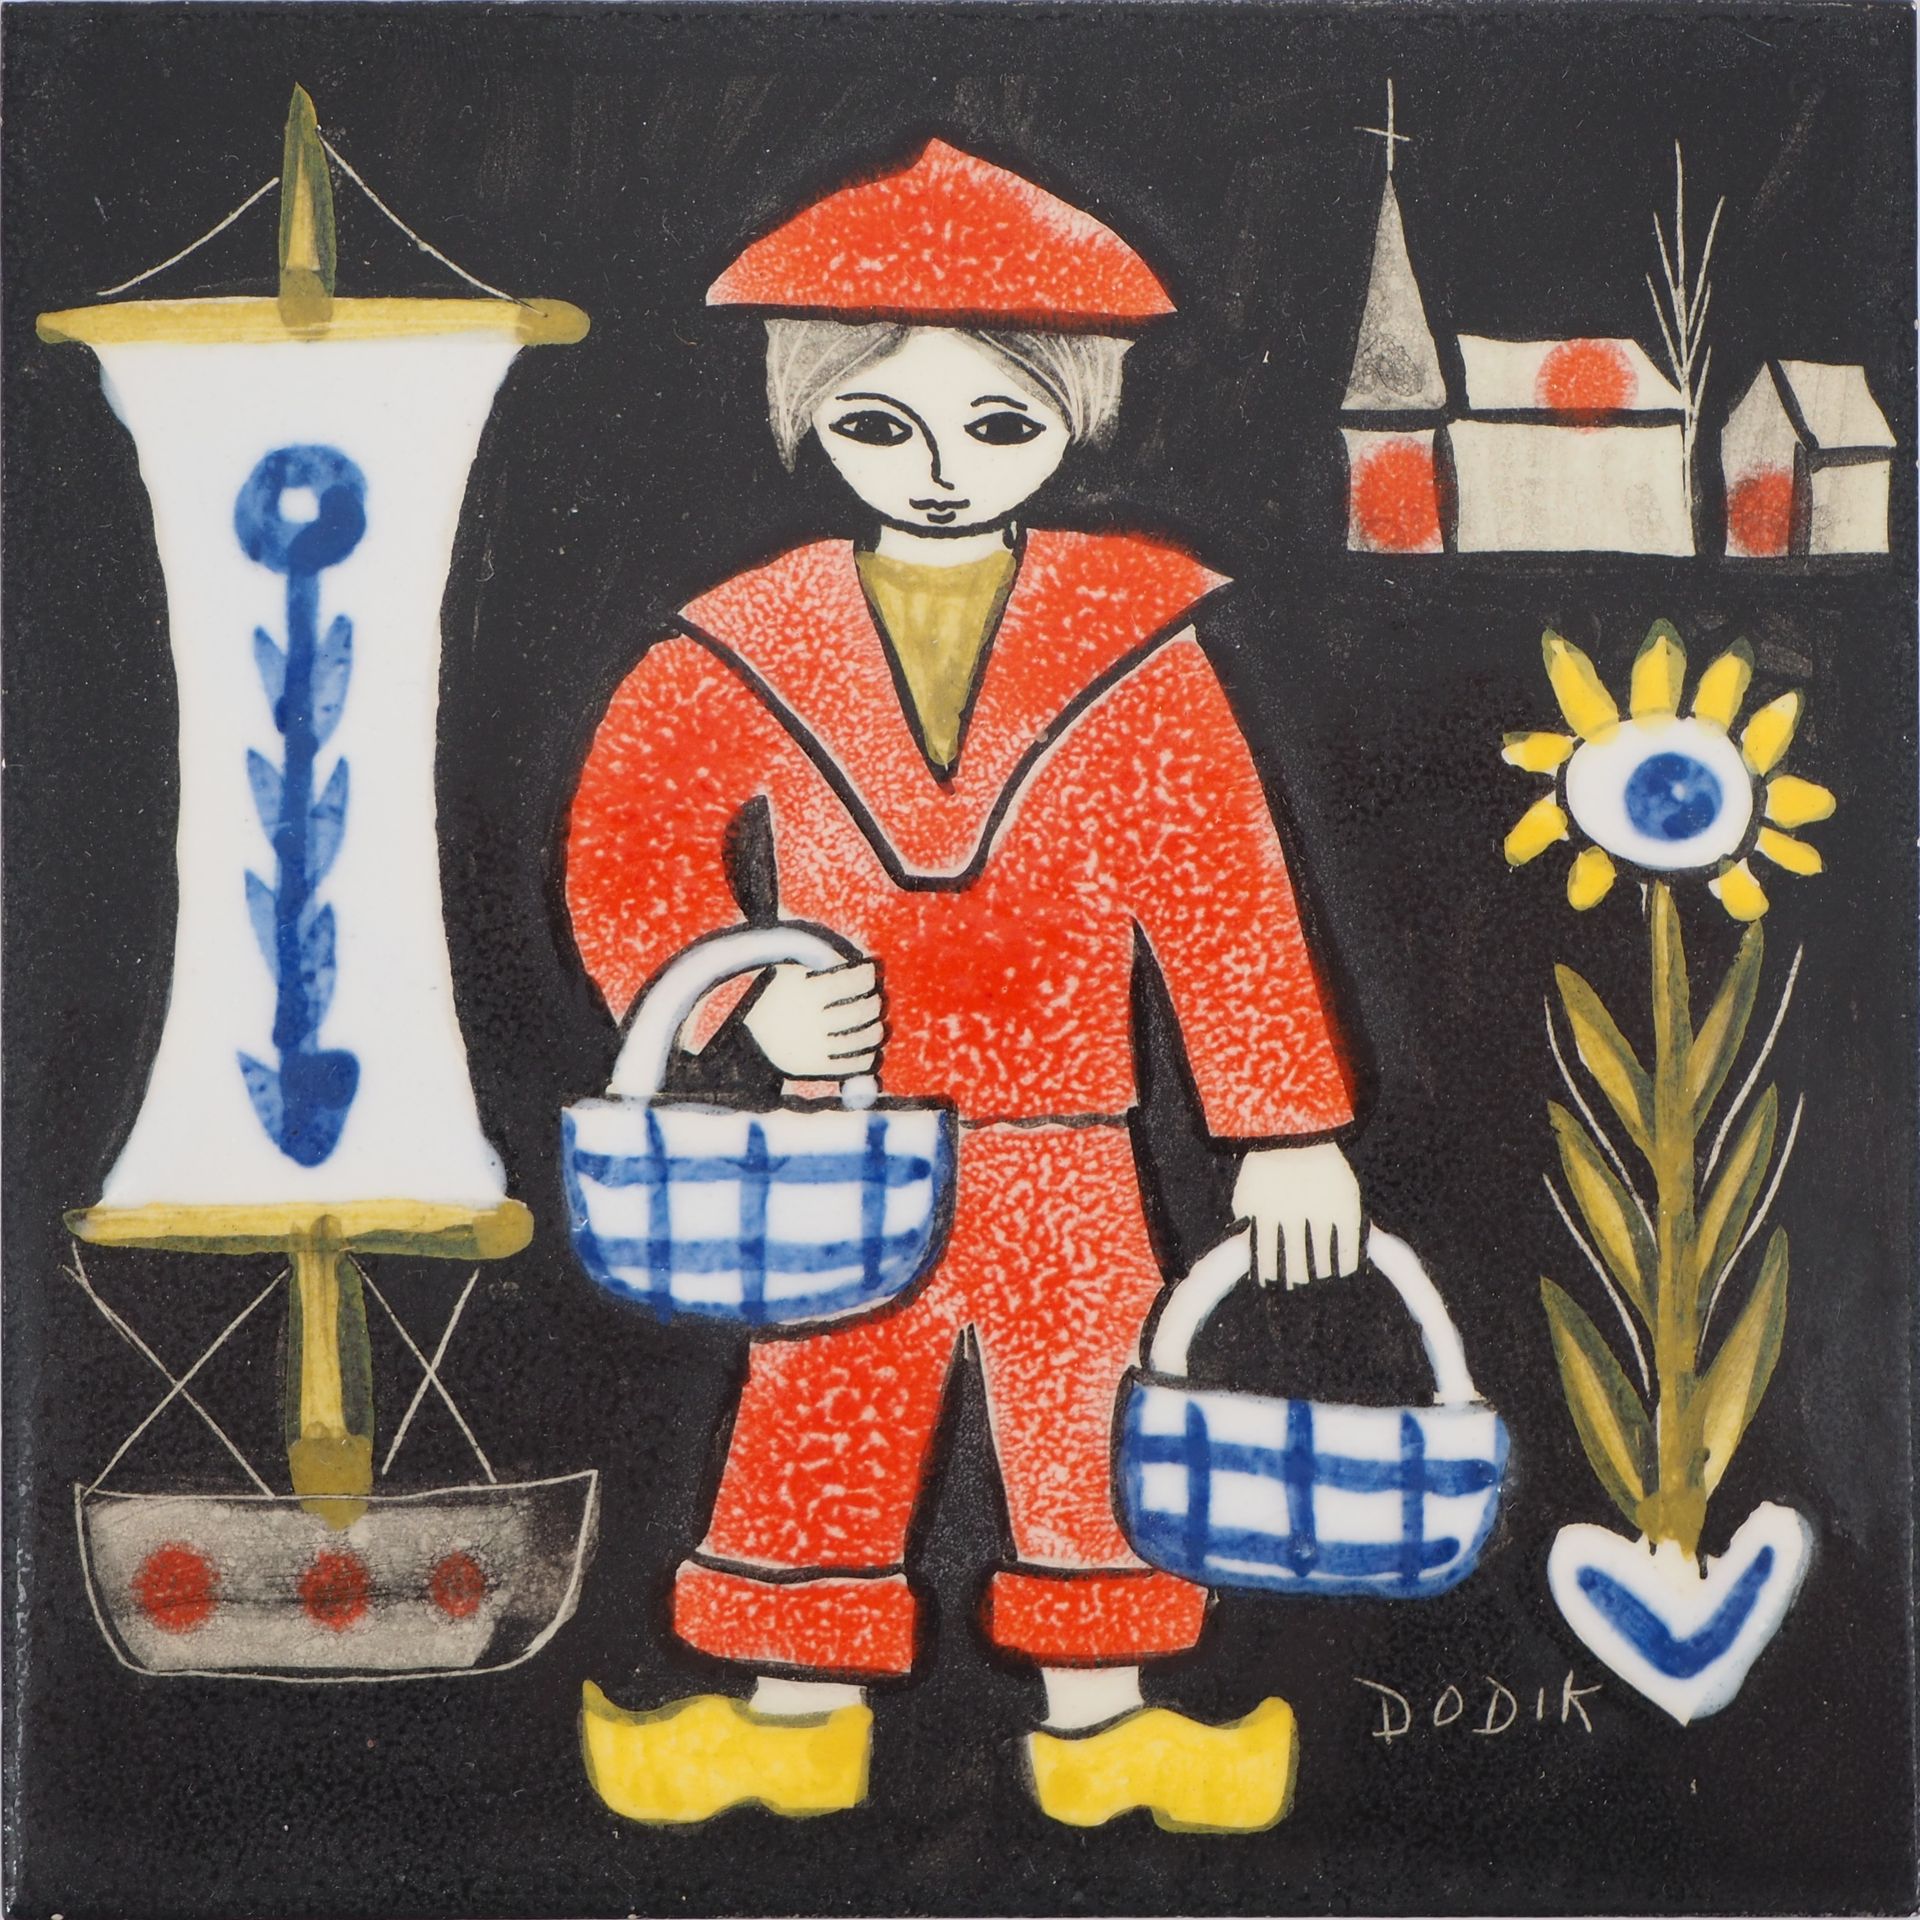 DODIK DODIK (Dodik Jégou dit, 1934-)

Scena bretone

Ceramica originale (Saint M&hellip;